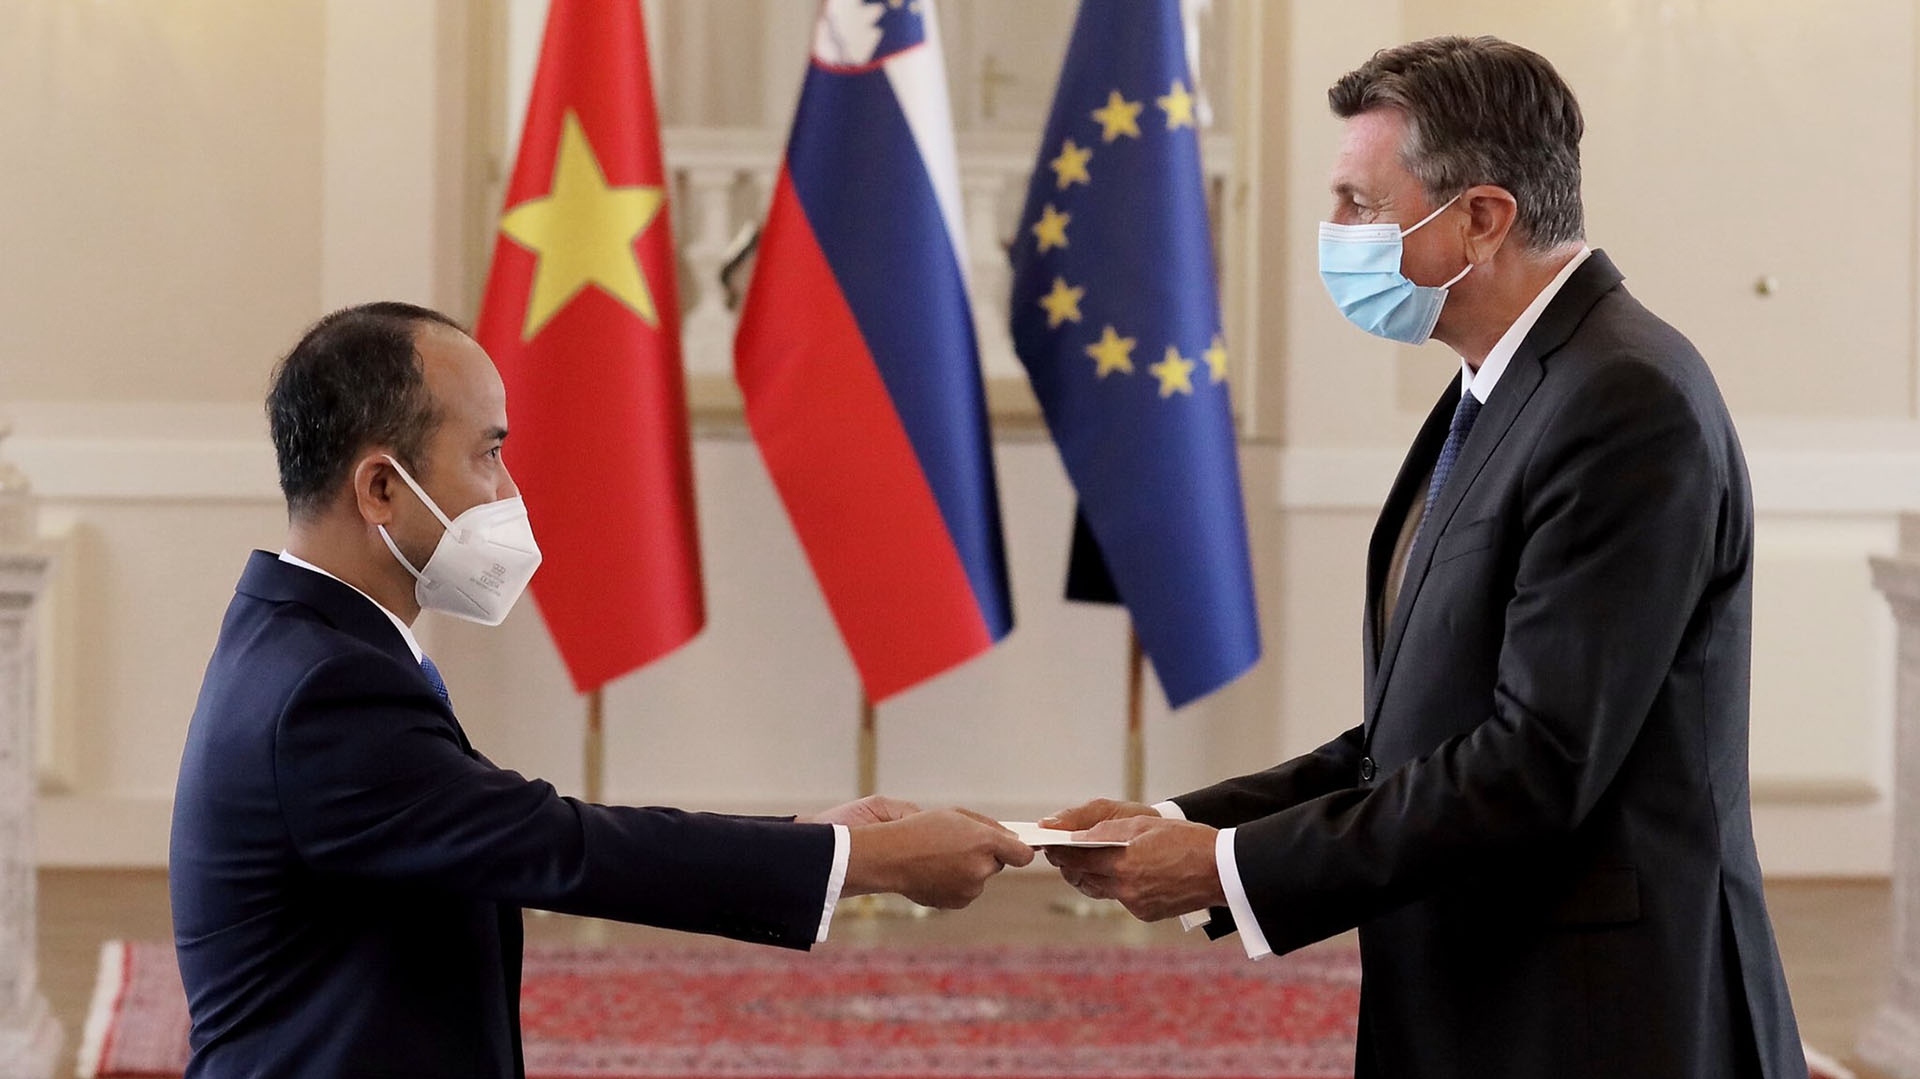 Việt Nam-Slovenia: Thúc đẩy hợp tác để cùng giải quyết các mối quan tâm chung